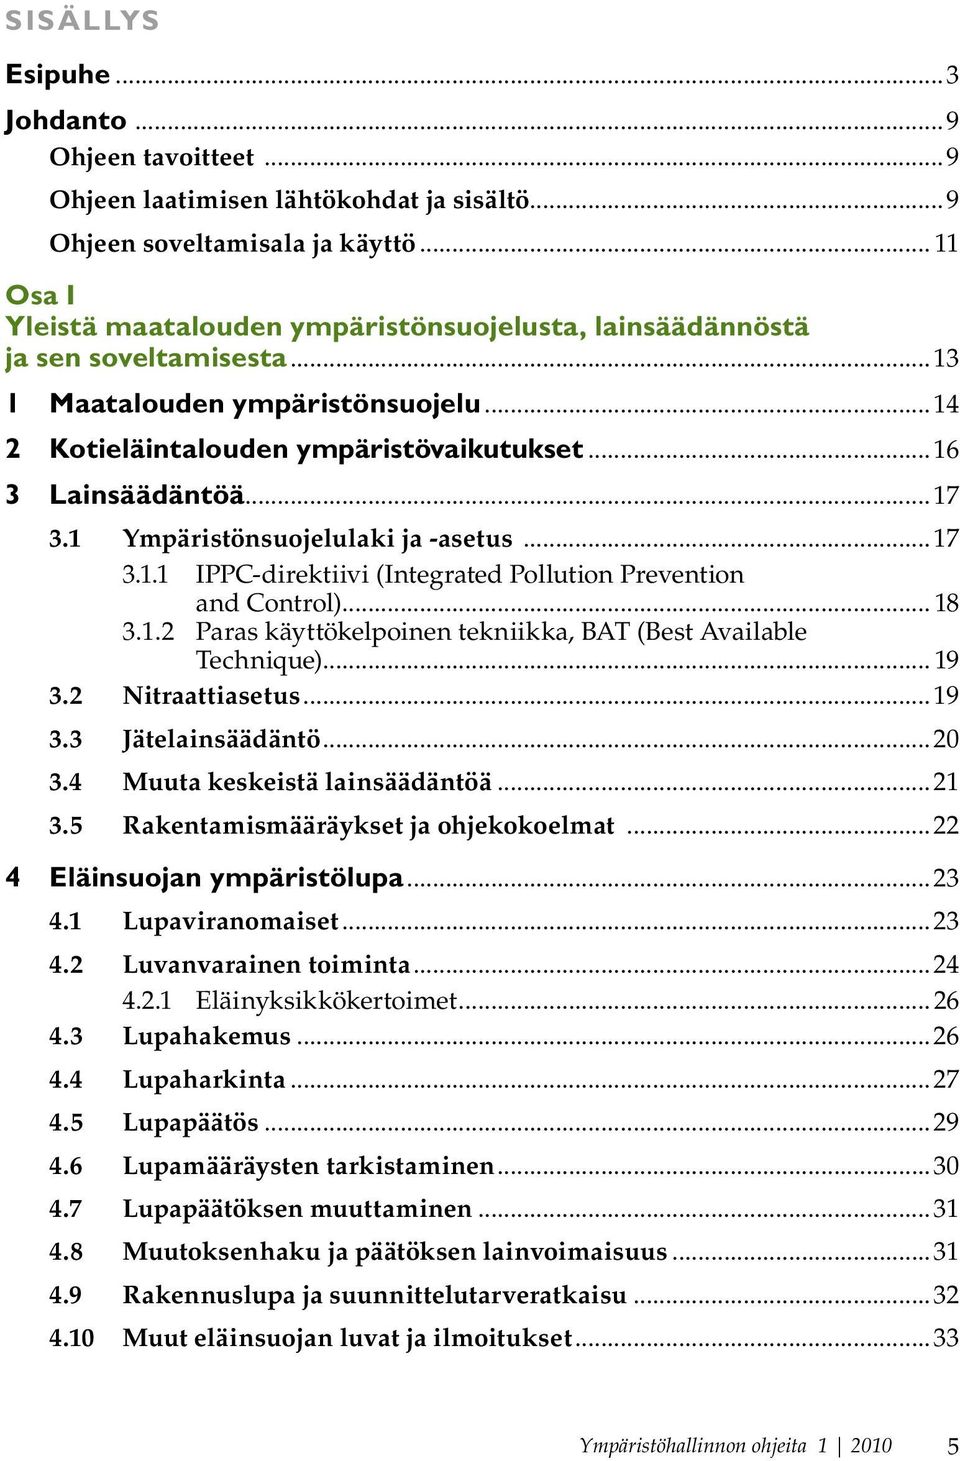 ..17 3.1 Ympäristönsuojelulaki ja -asetus...17 3.1.1 IPPC-direktiivi (Integrated Pollution Prevention and Control)... 18 3.1.2 Paras käyttökelpoinen tekniikka, BAT (Best Available Technique)... 19 3.